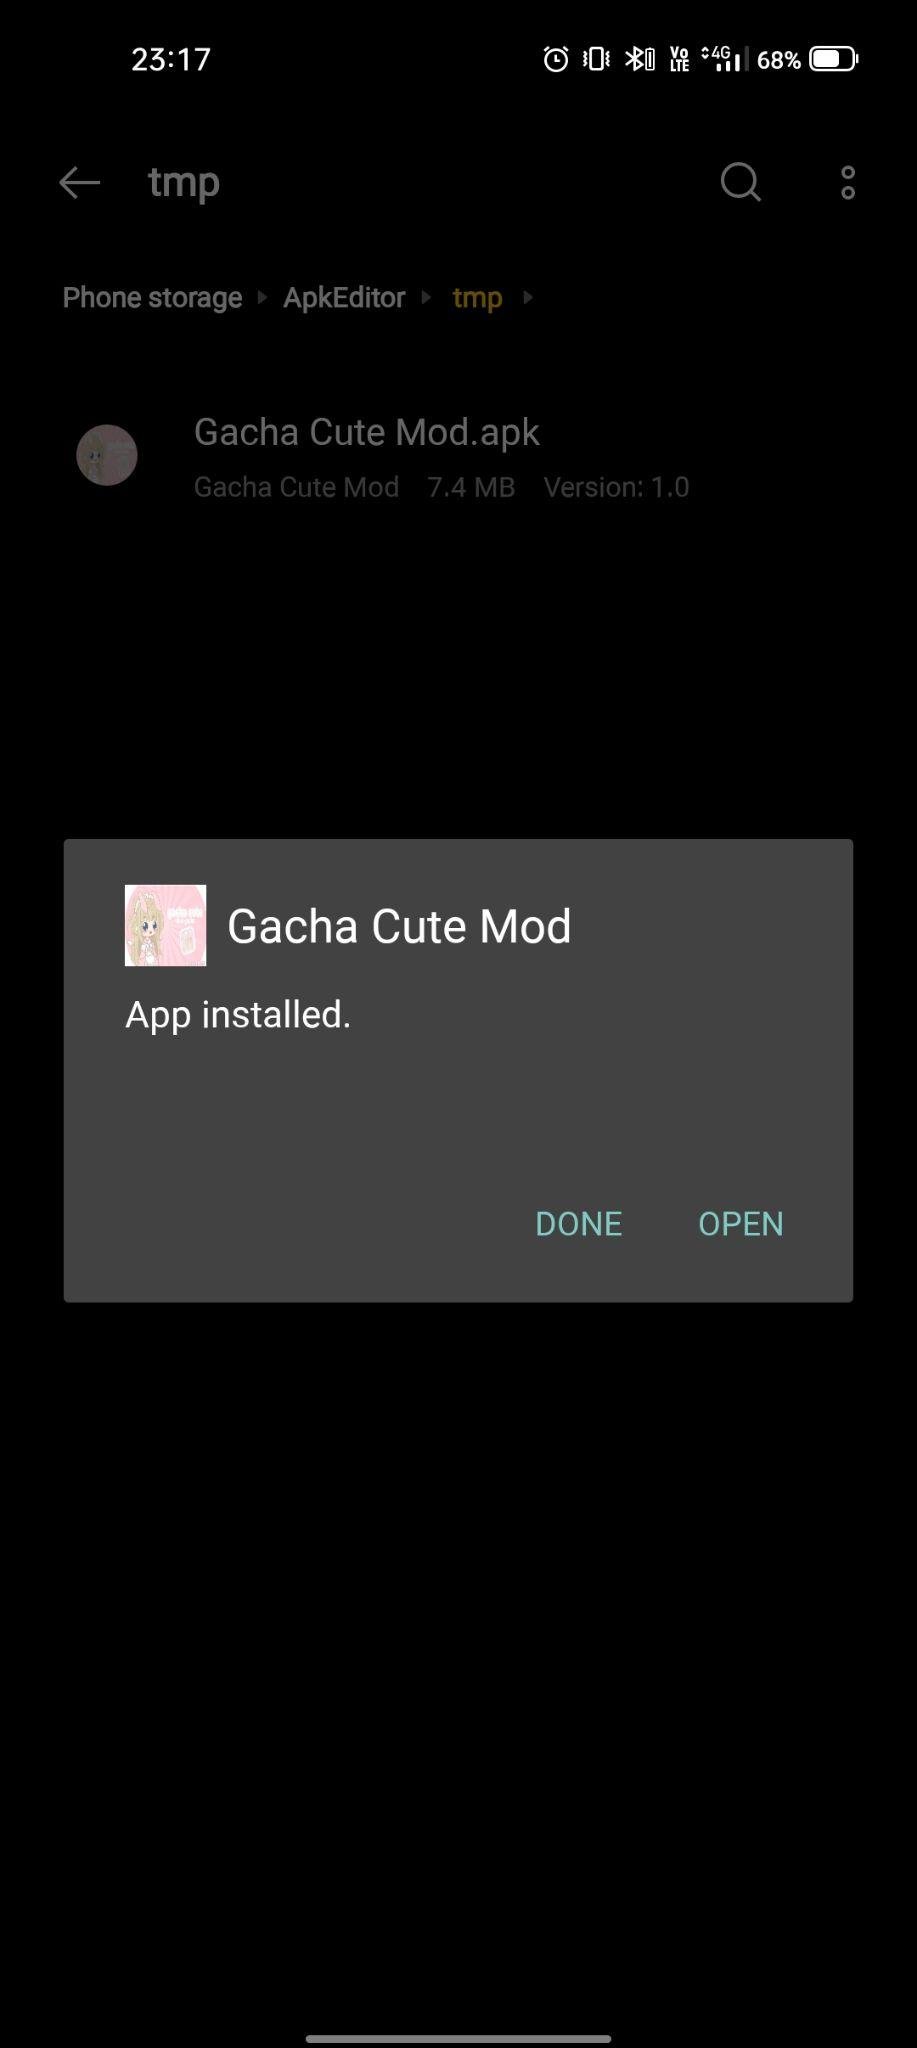 gacha cute mod apk installed